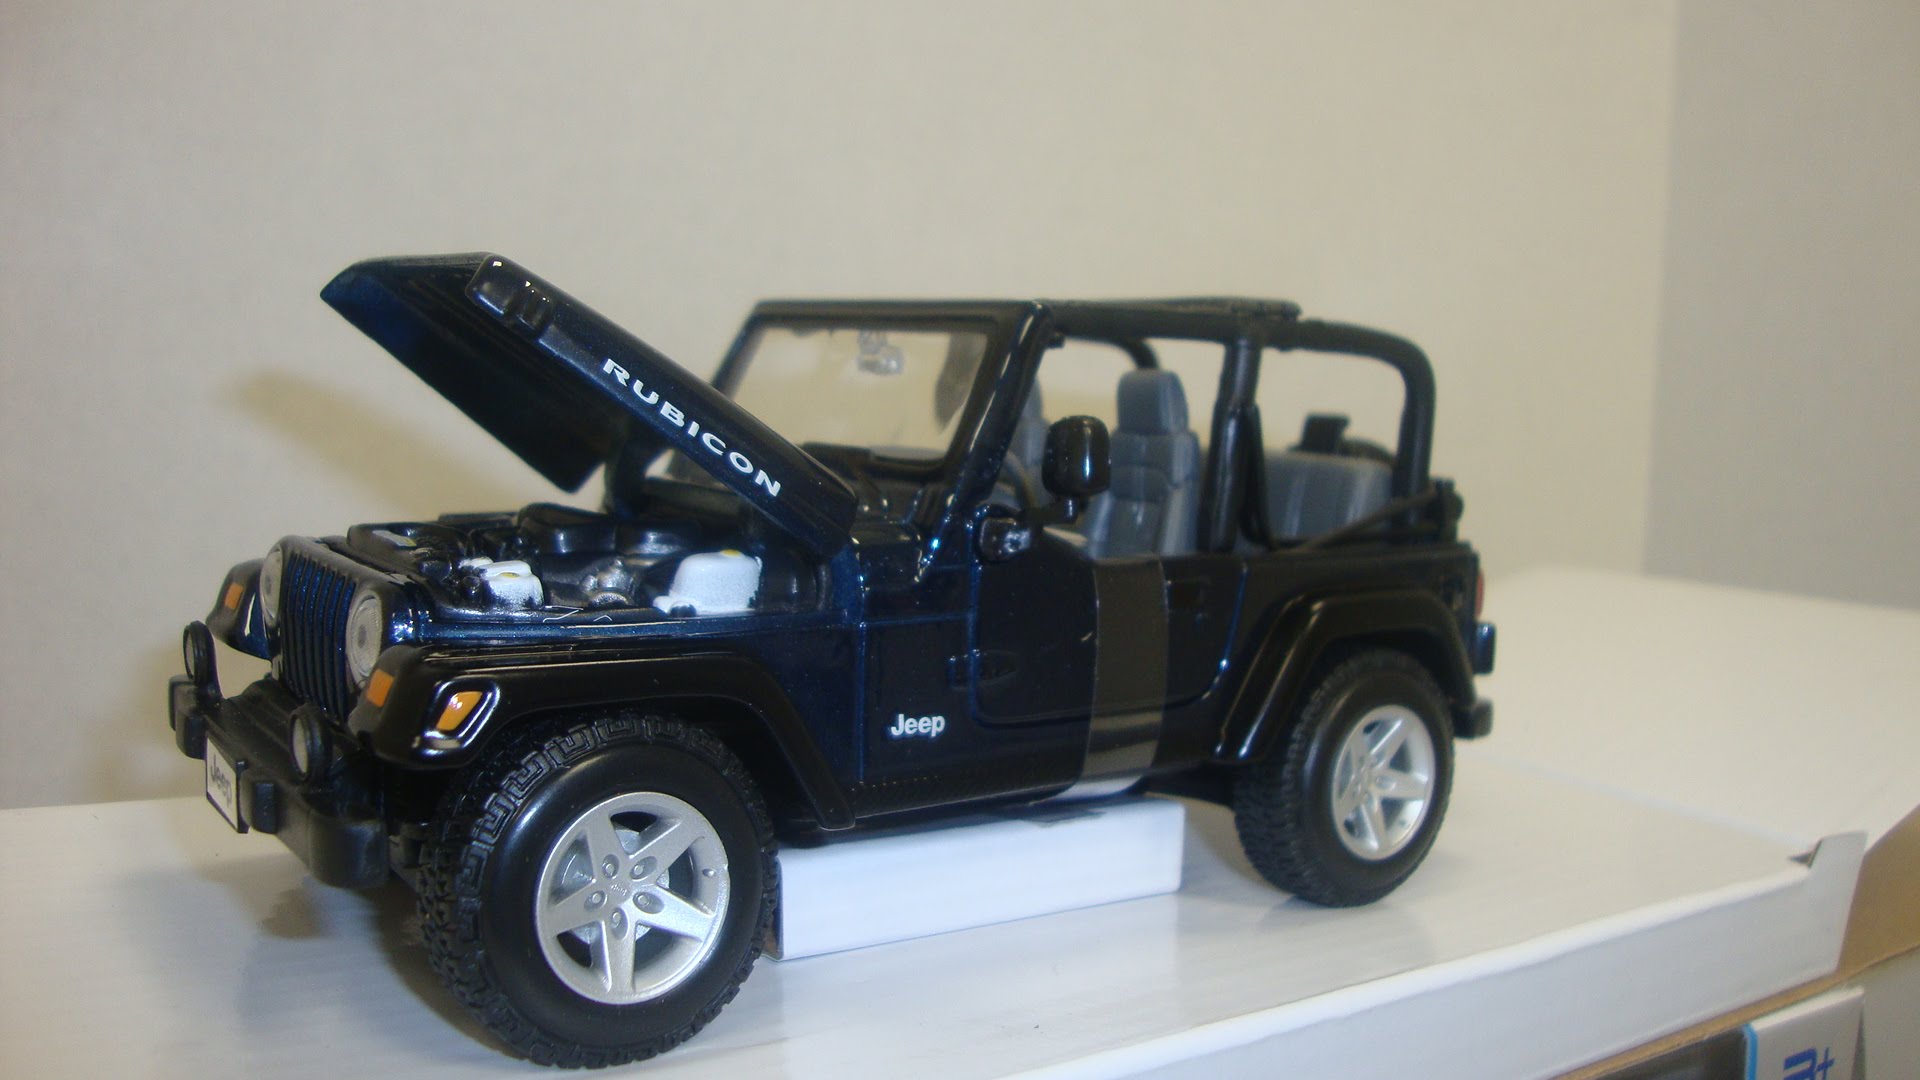 Toy Jeep Rubicon Wrangler - YouTube